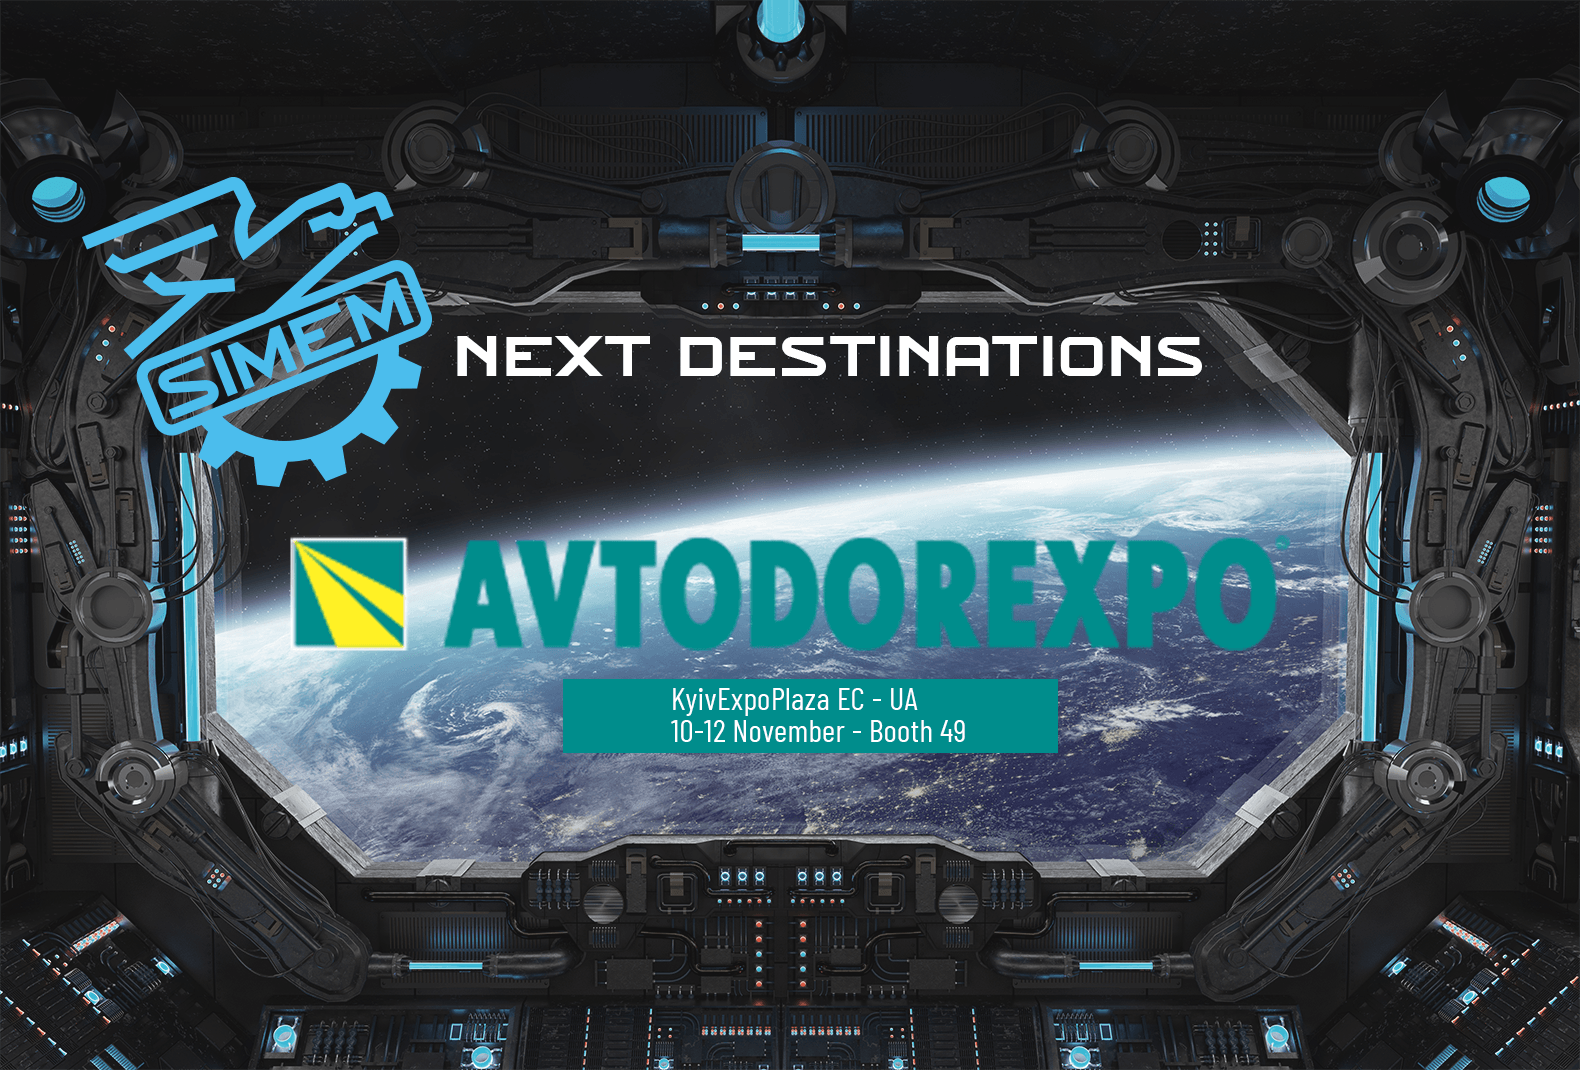 Avtodorexpo – Kiev